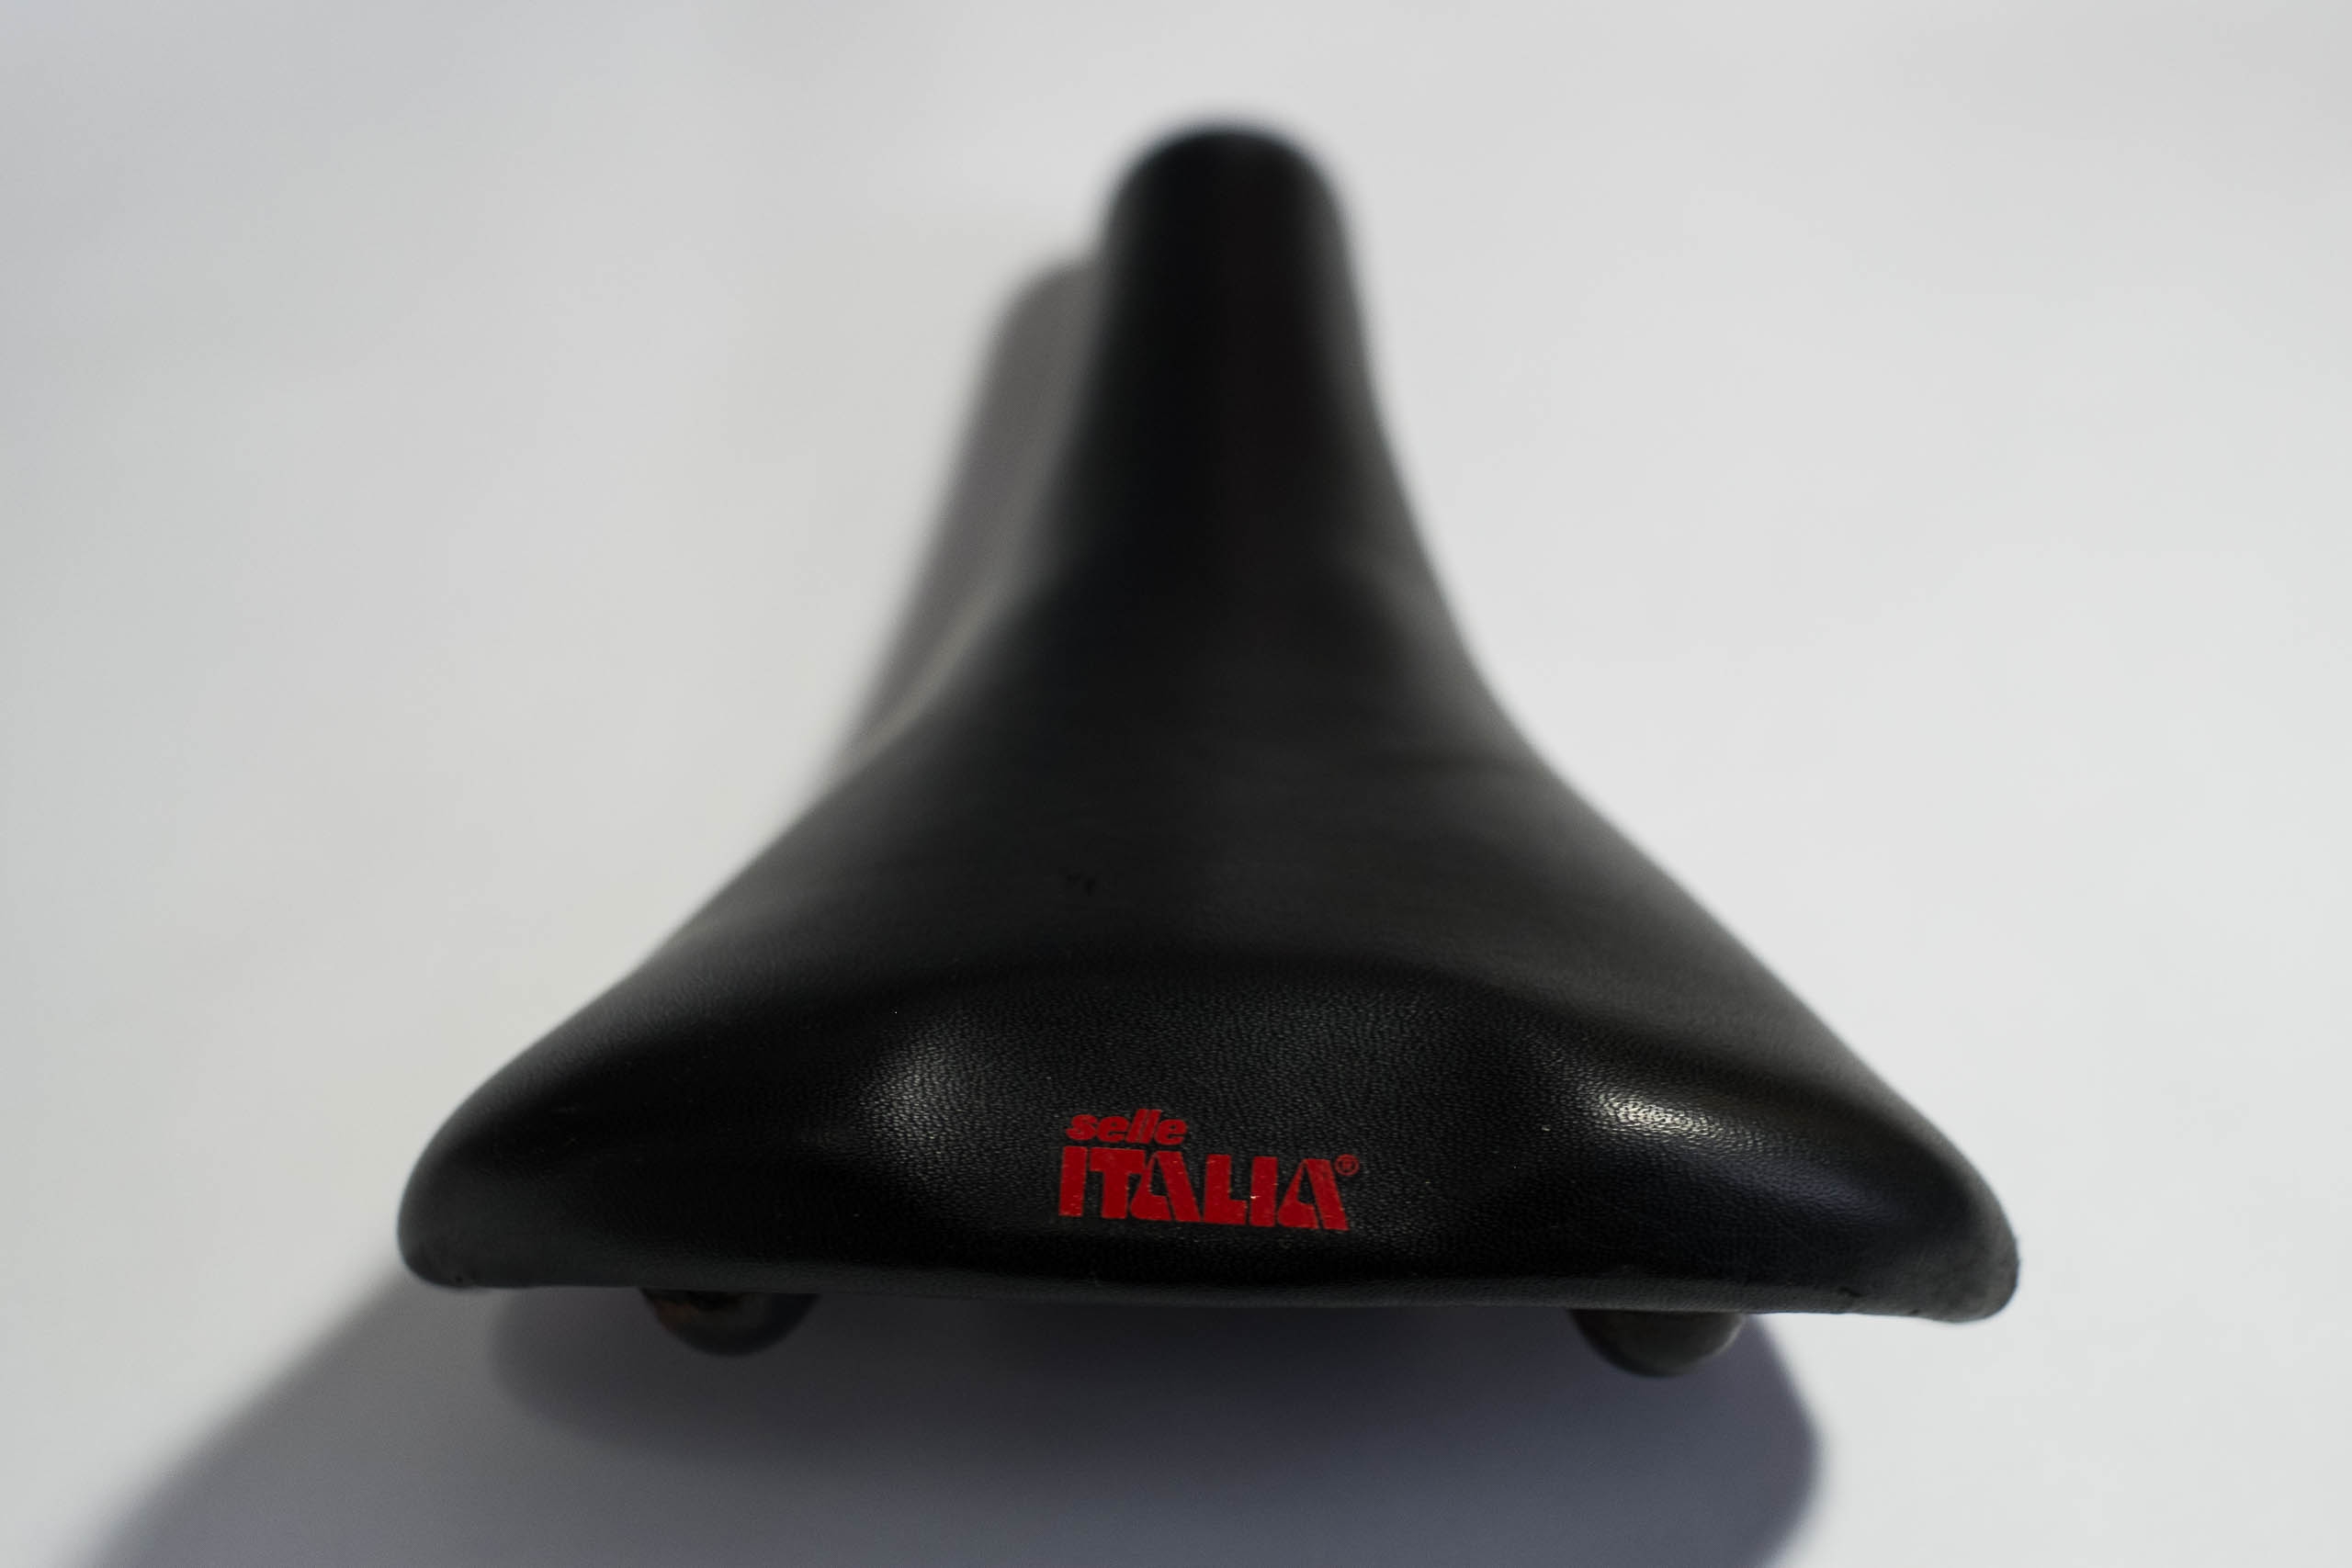 Selle Italia Selle Italia Flite Titanium bike bicycle seat saddle black leather vintage 